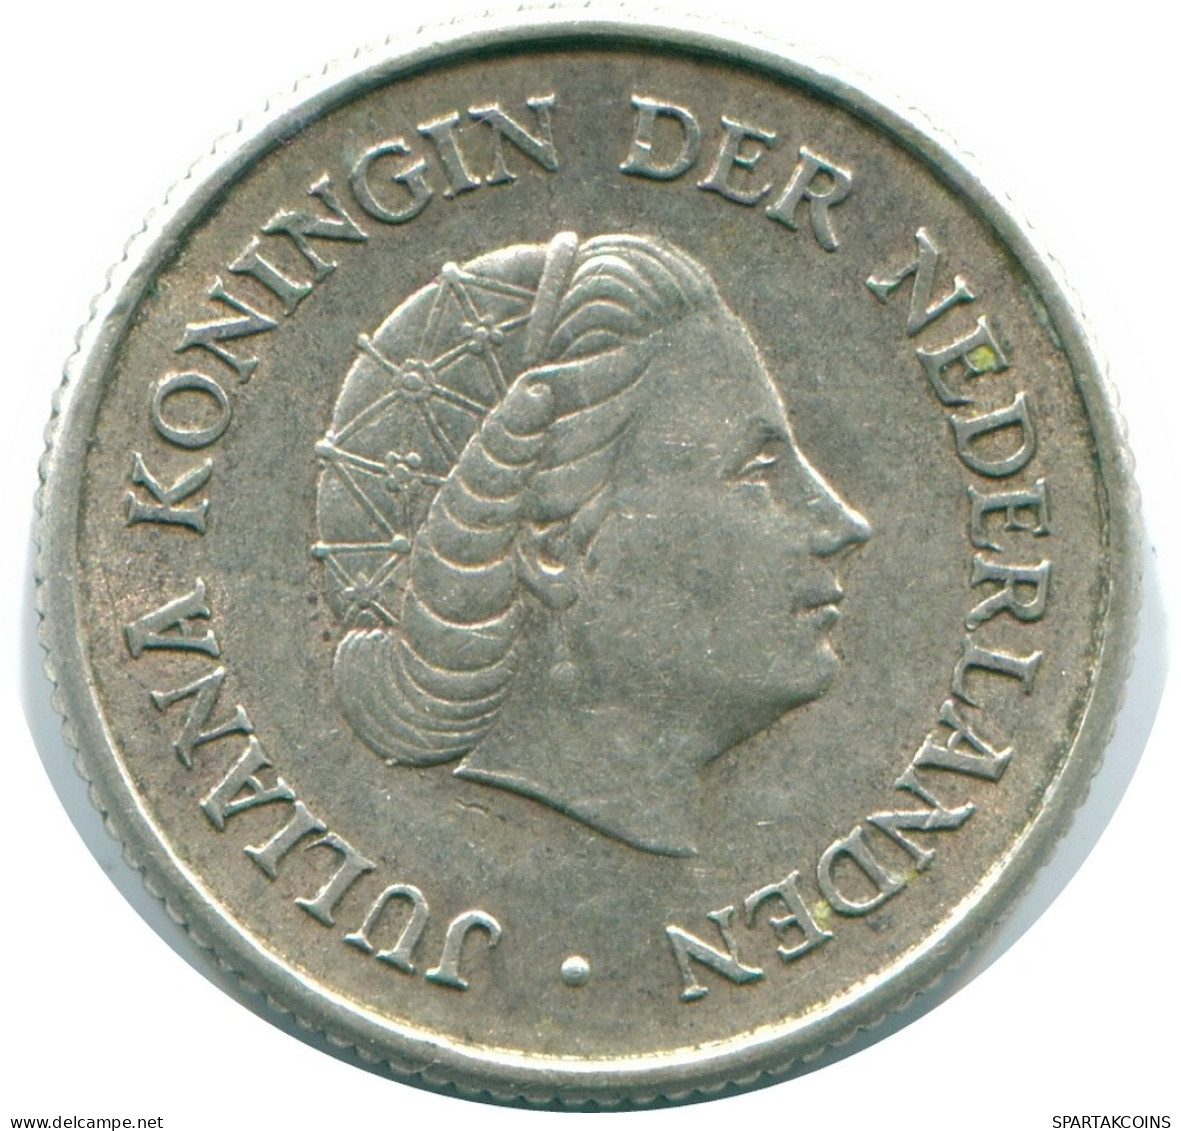 1/4 GULDEN 1962 NIEDERLÄNDISCHE ANTILLEN SILBER Koloniale Münze #NL11118.4.D.A - Niederländische Antillen